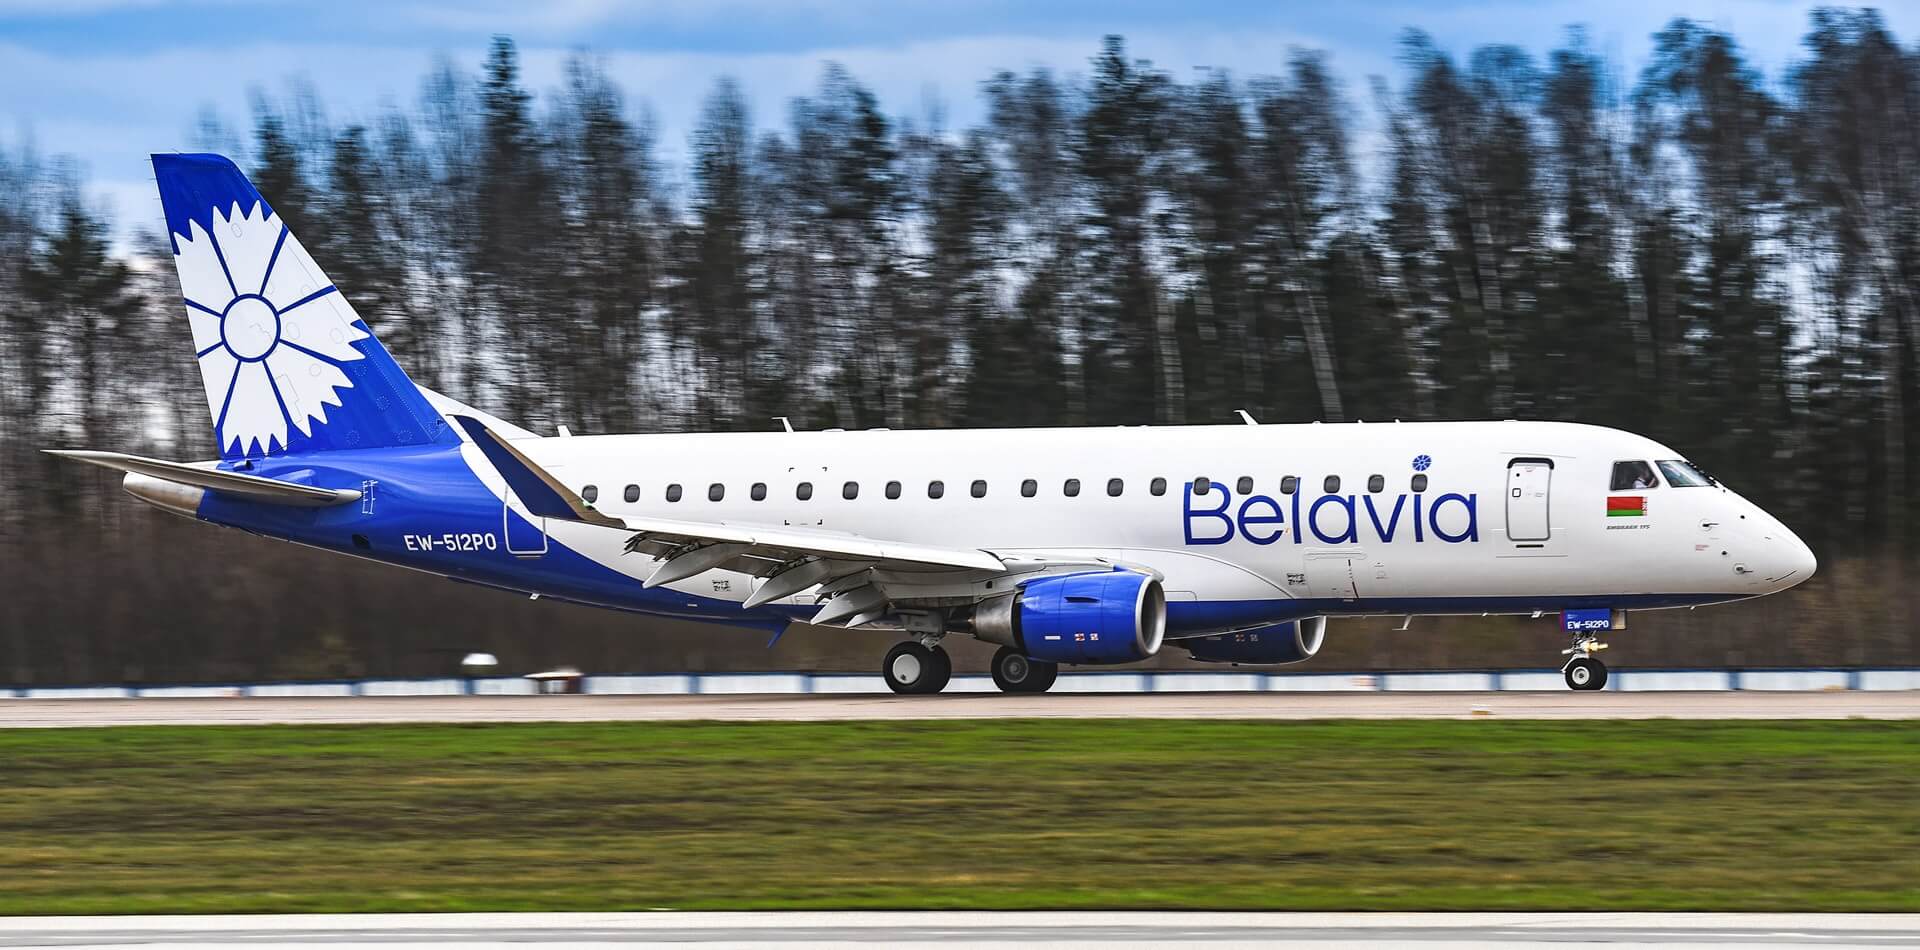 Î‘Ï€Î¿Ï„Î­Î»ÎµÏƒÎ¼Î± ÎµÎ¹ÎºÏŒÎ½Î±Ï‚ Î³Î¹Î± Belavia has carried out the first flight to Munich